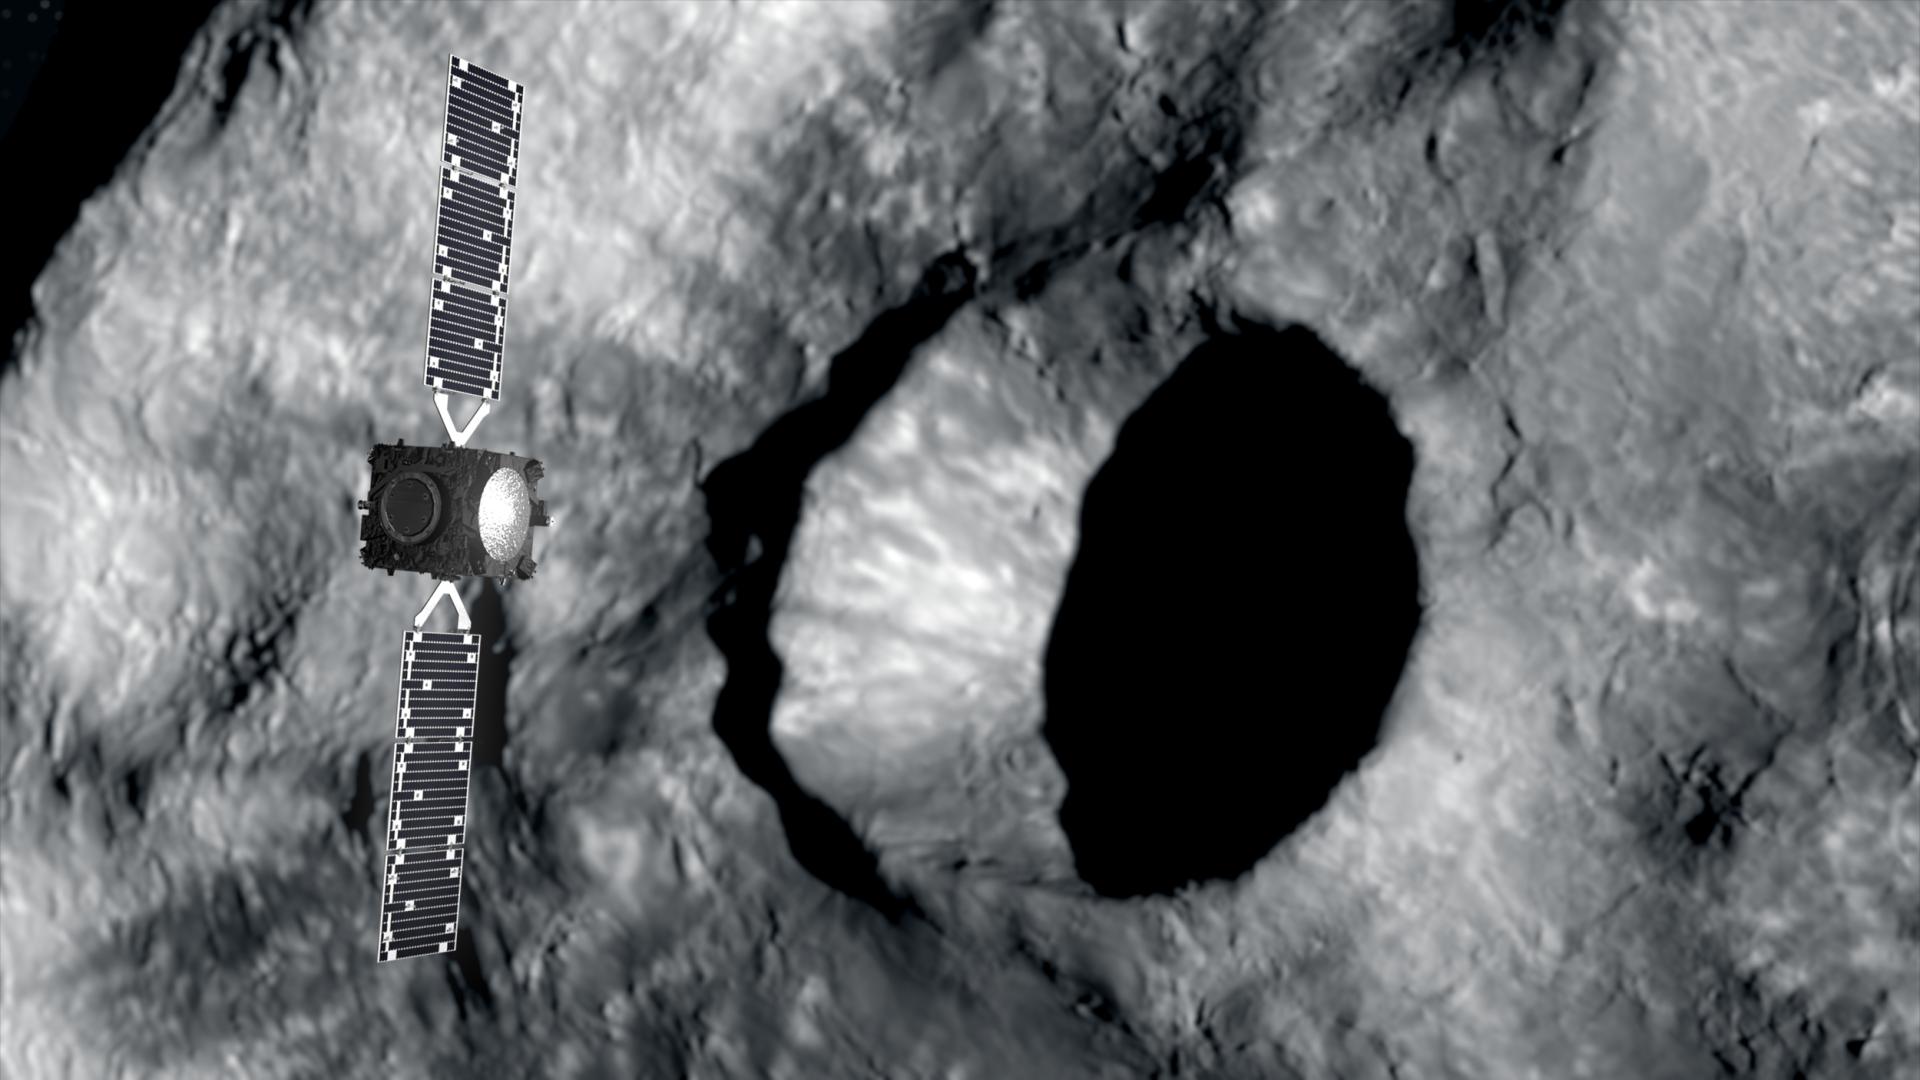 missione spaziale sorvola asteroide e scatta foto